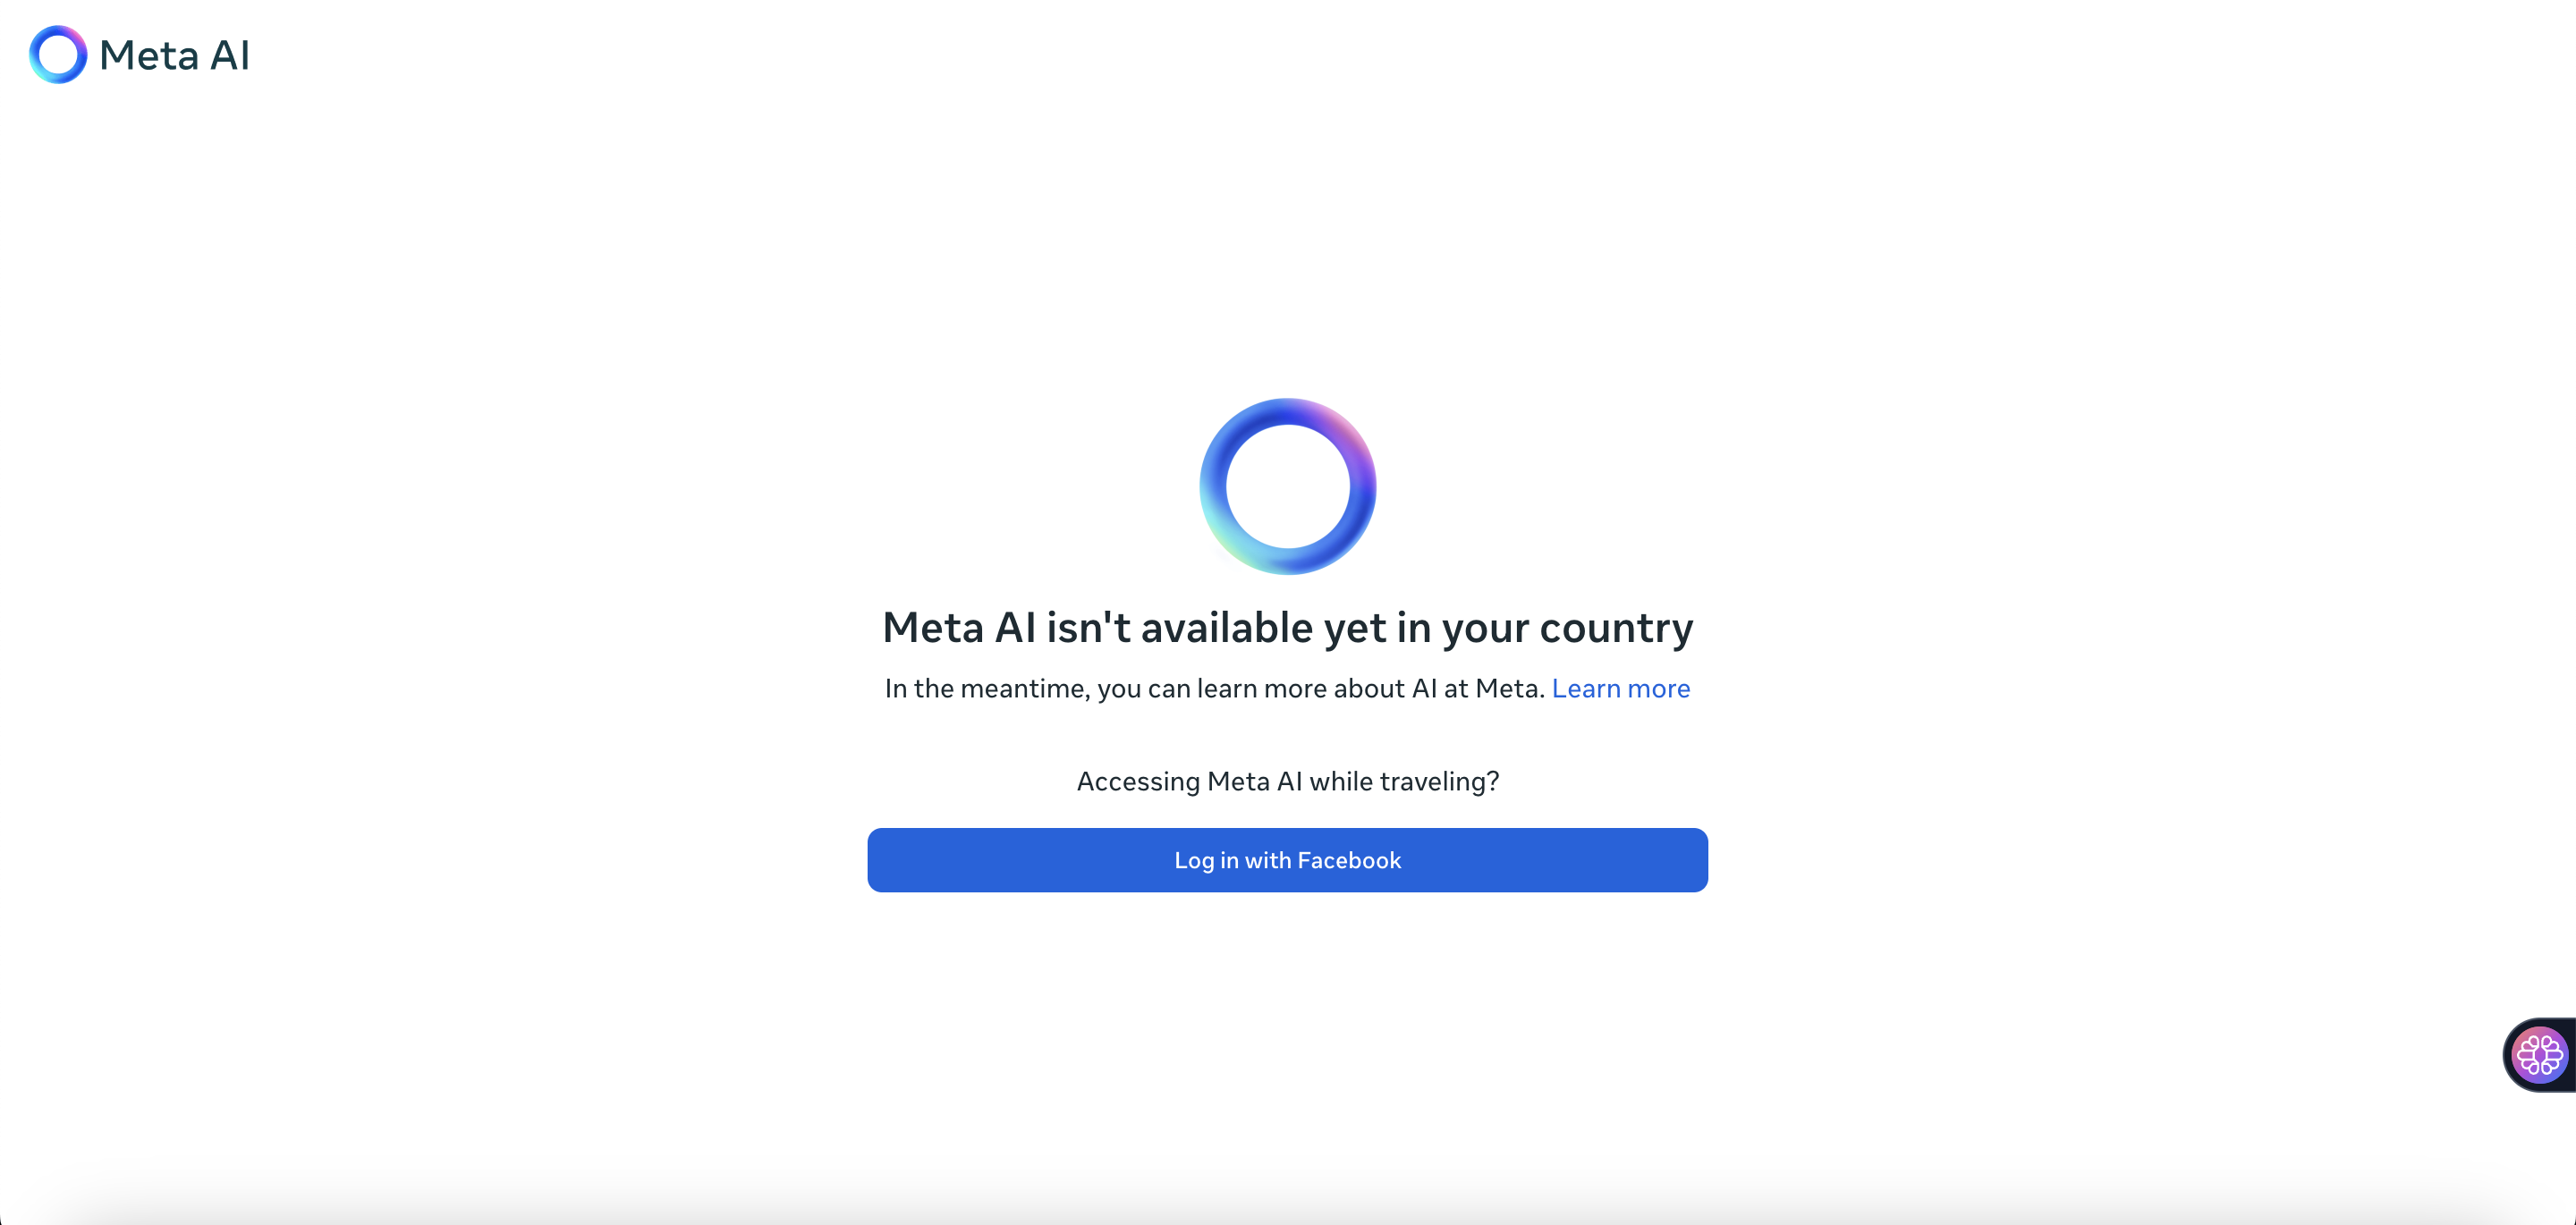 Meta AI aún no está disponible en tu país